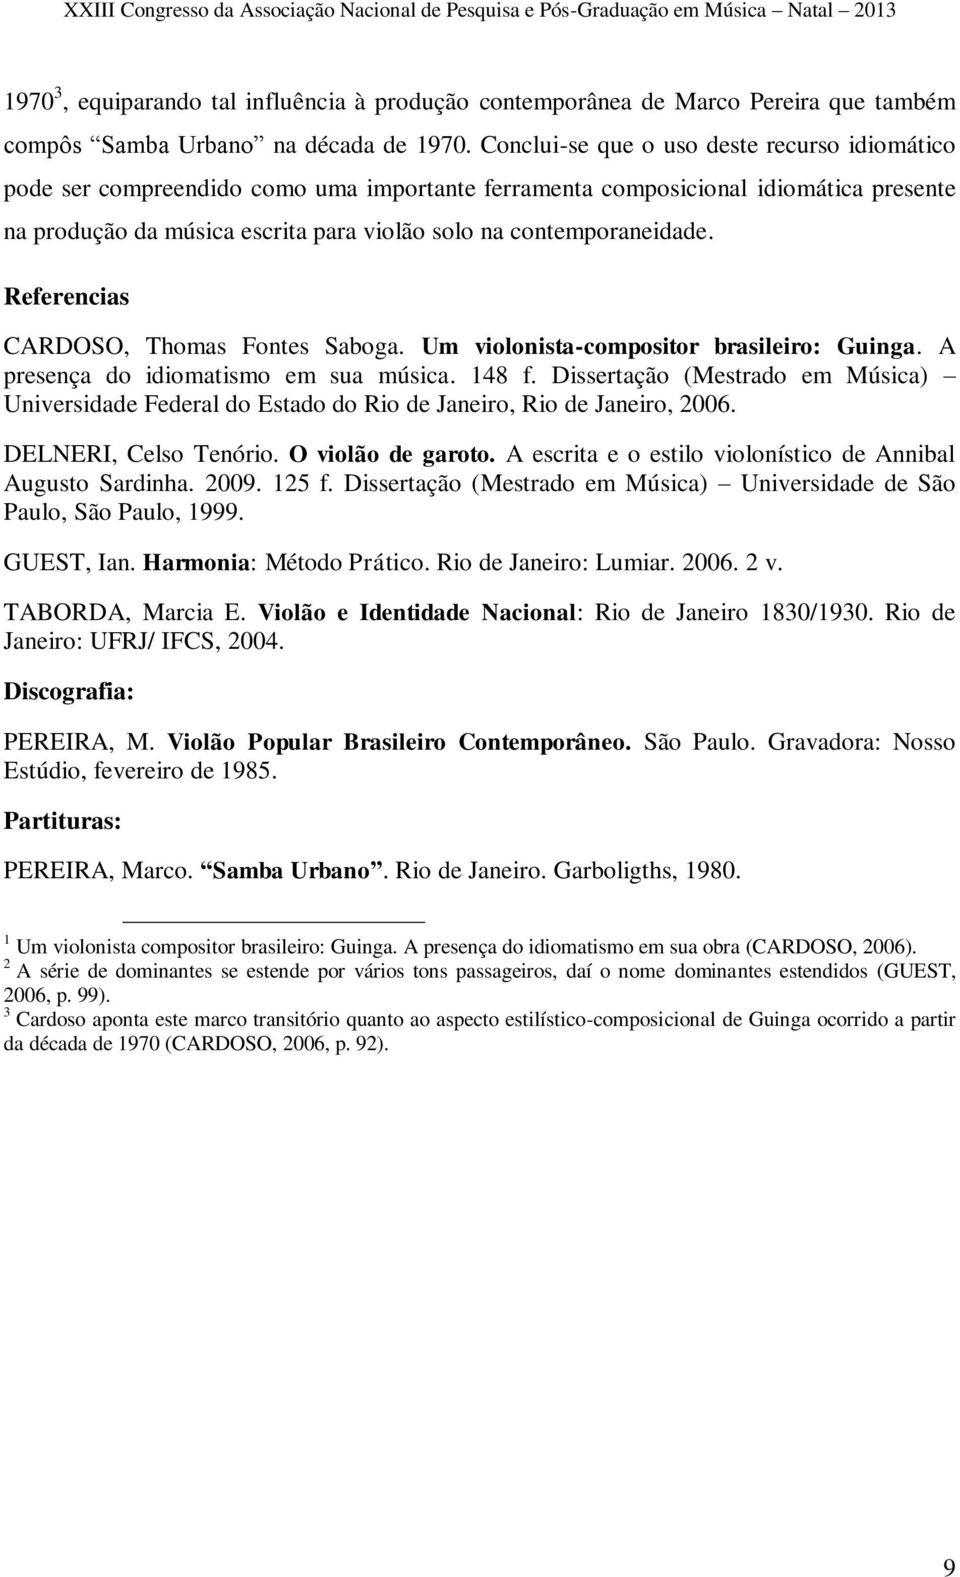 contemporaneidade. Referencias CARDOSO, Thomas Fontes Saboga. Um violonista-compositor brasileiro: Guinga. A presença do idiomatismo em sua música. 148 f.